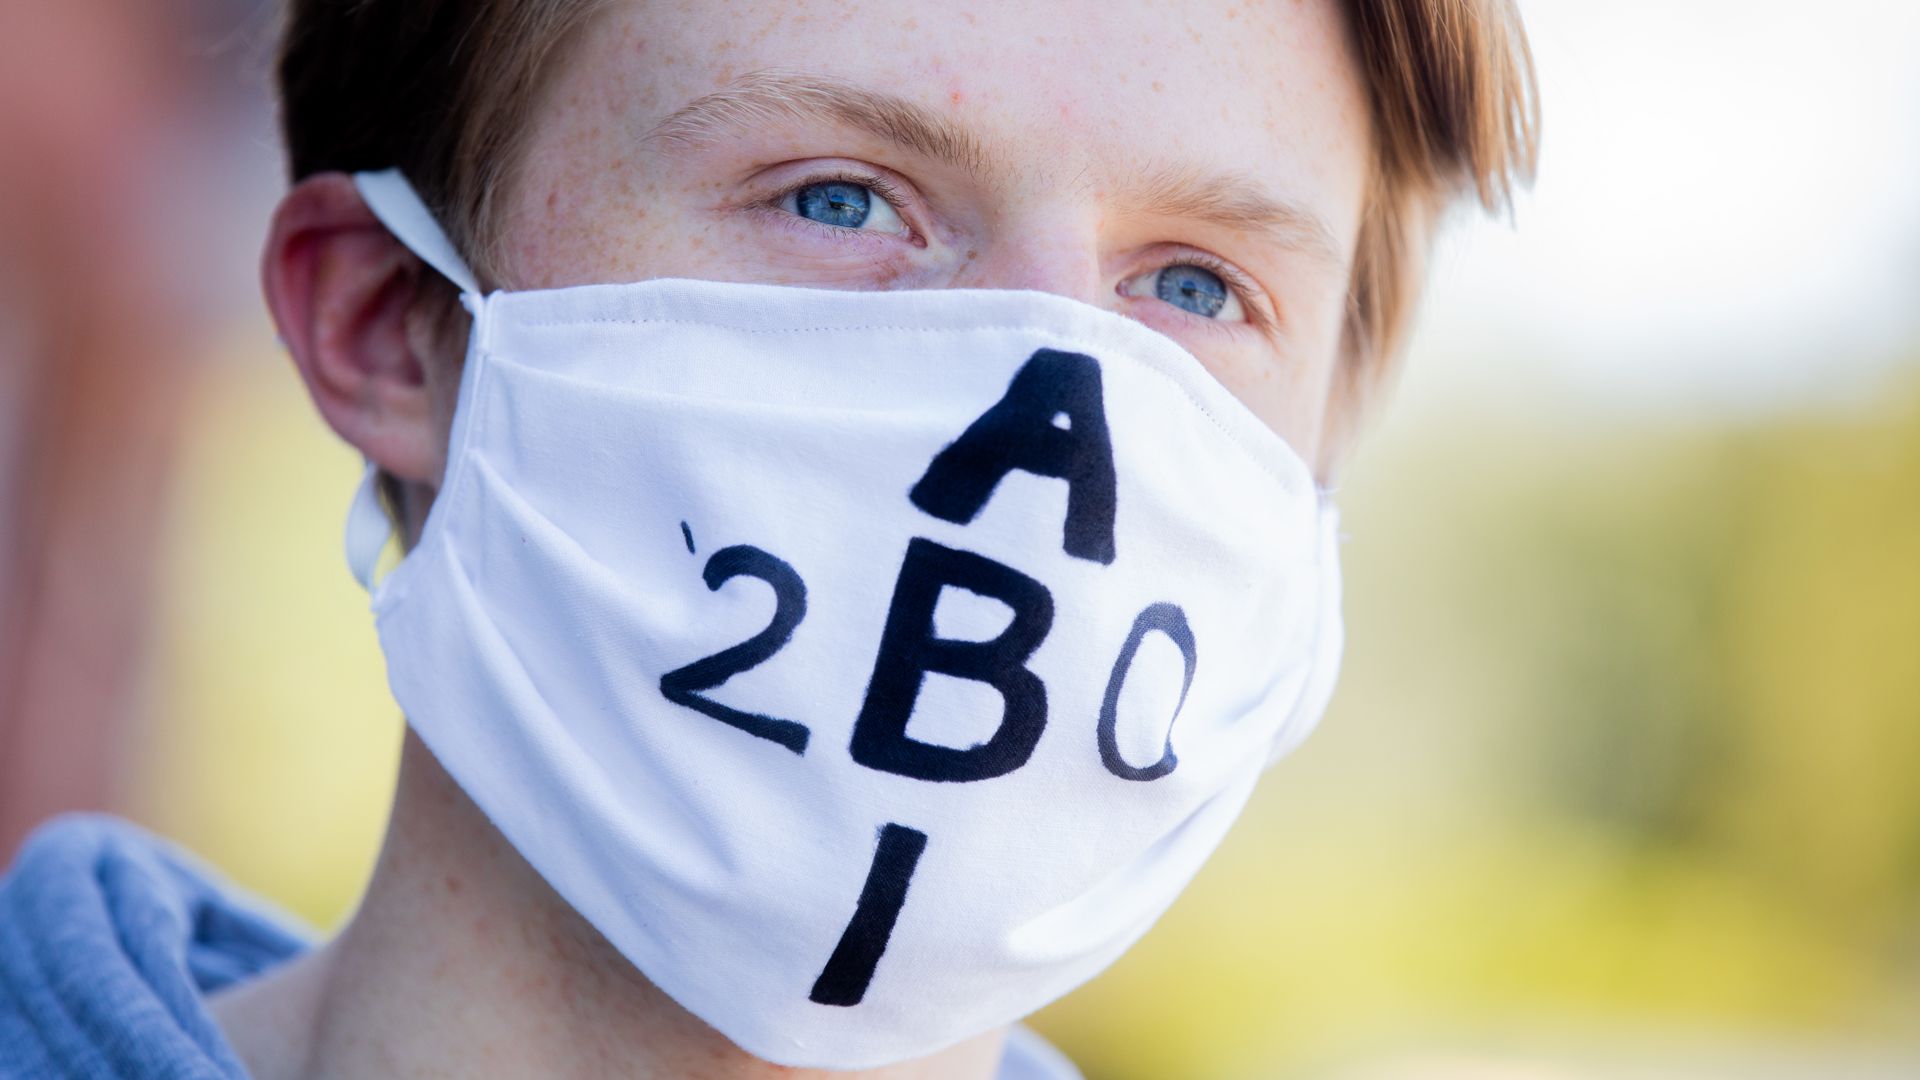 Ein Schüler trägt wegen des Coronavirus eine Schutzmaske mit der Aufschrift "Abi 2020".